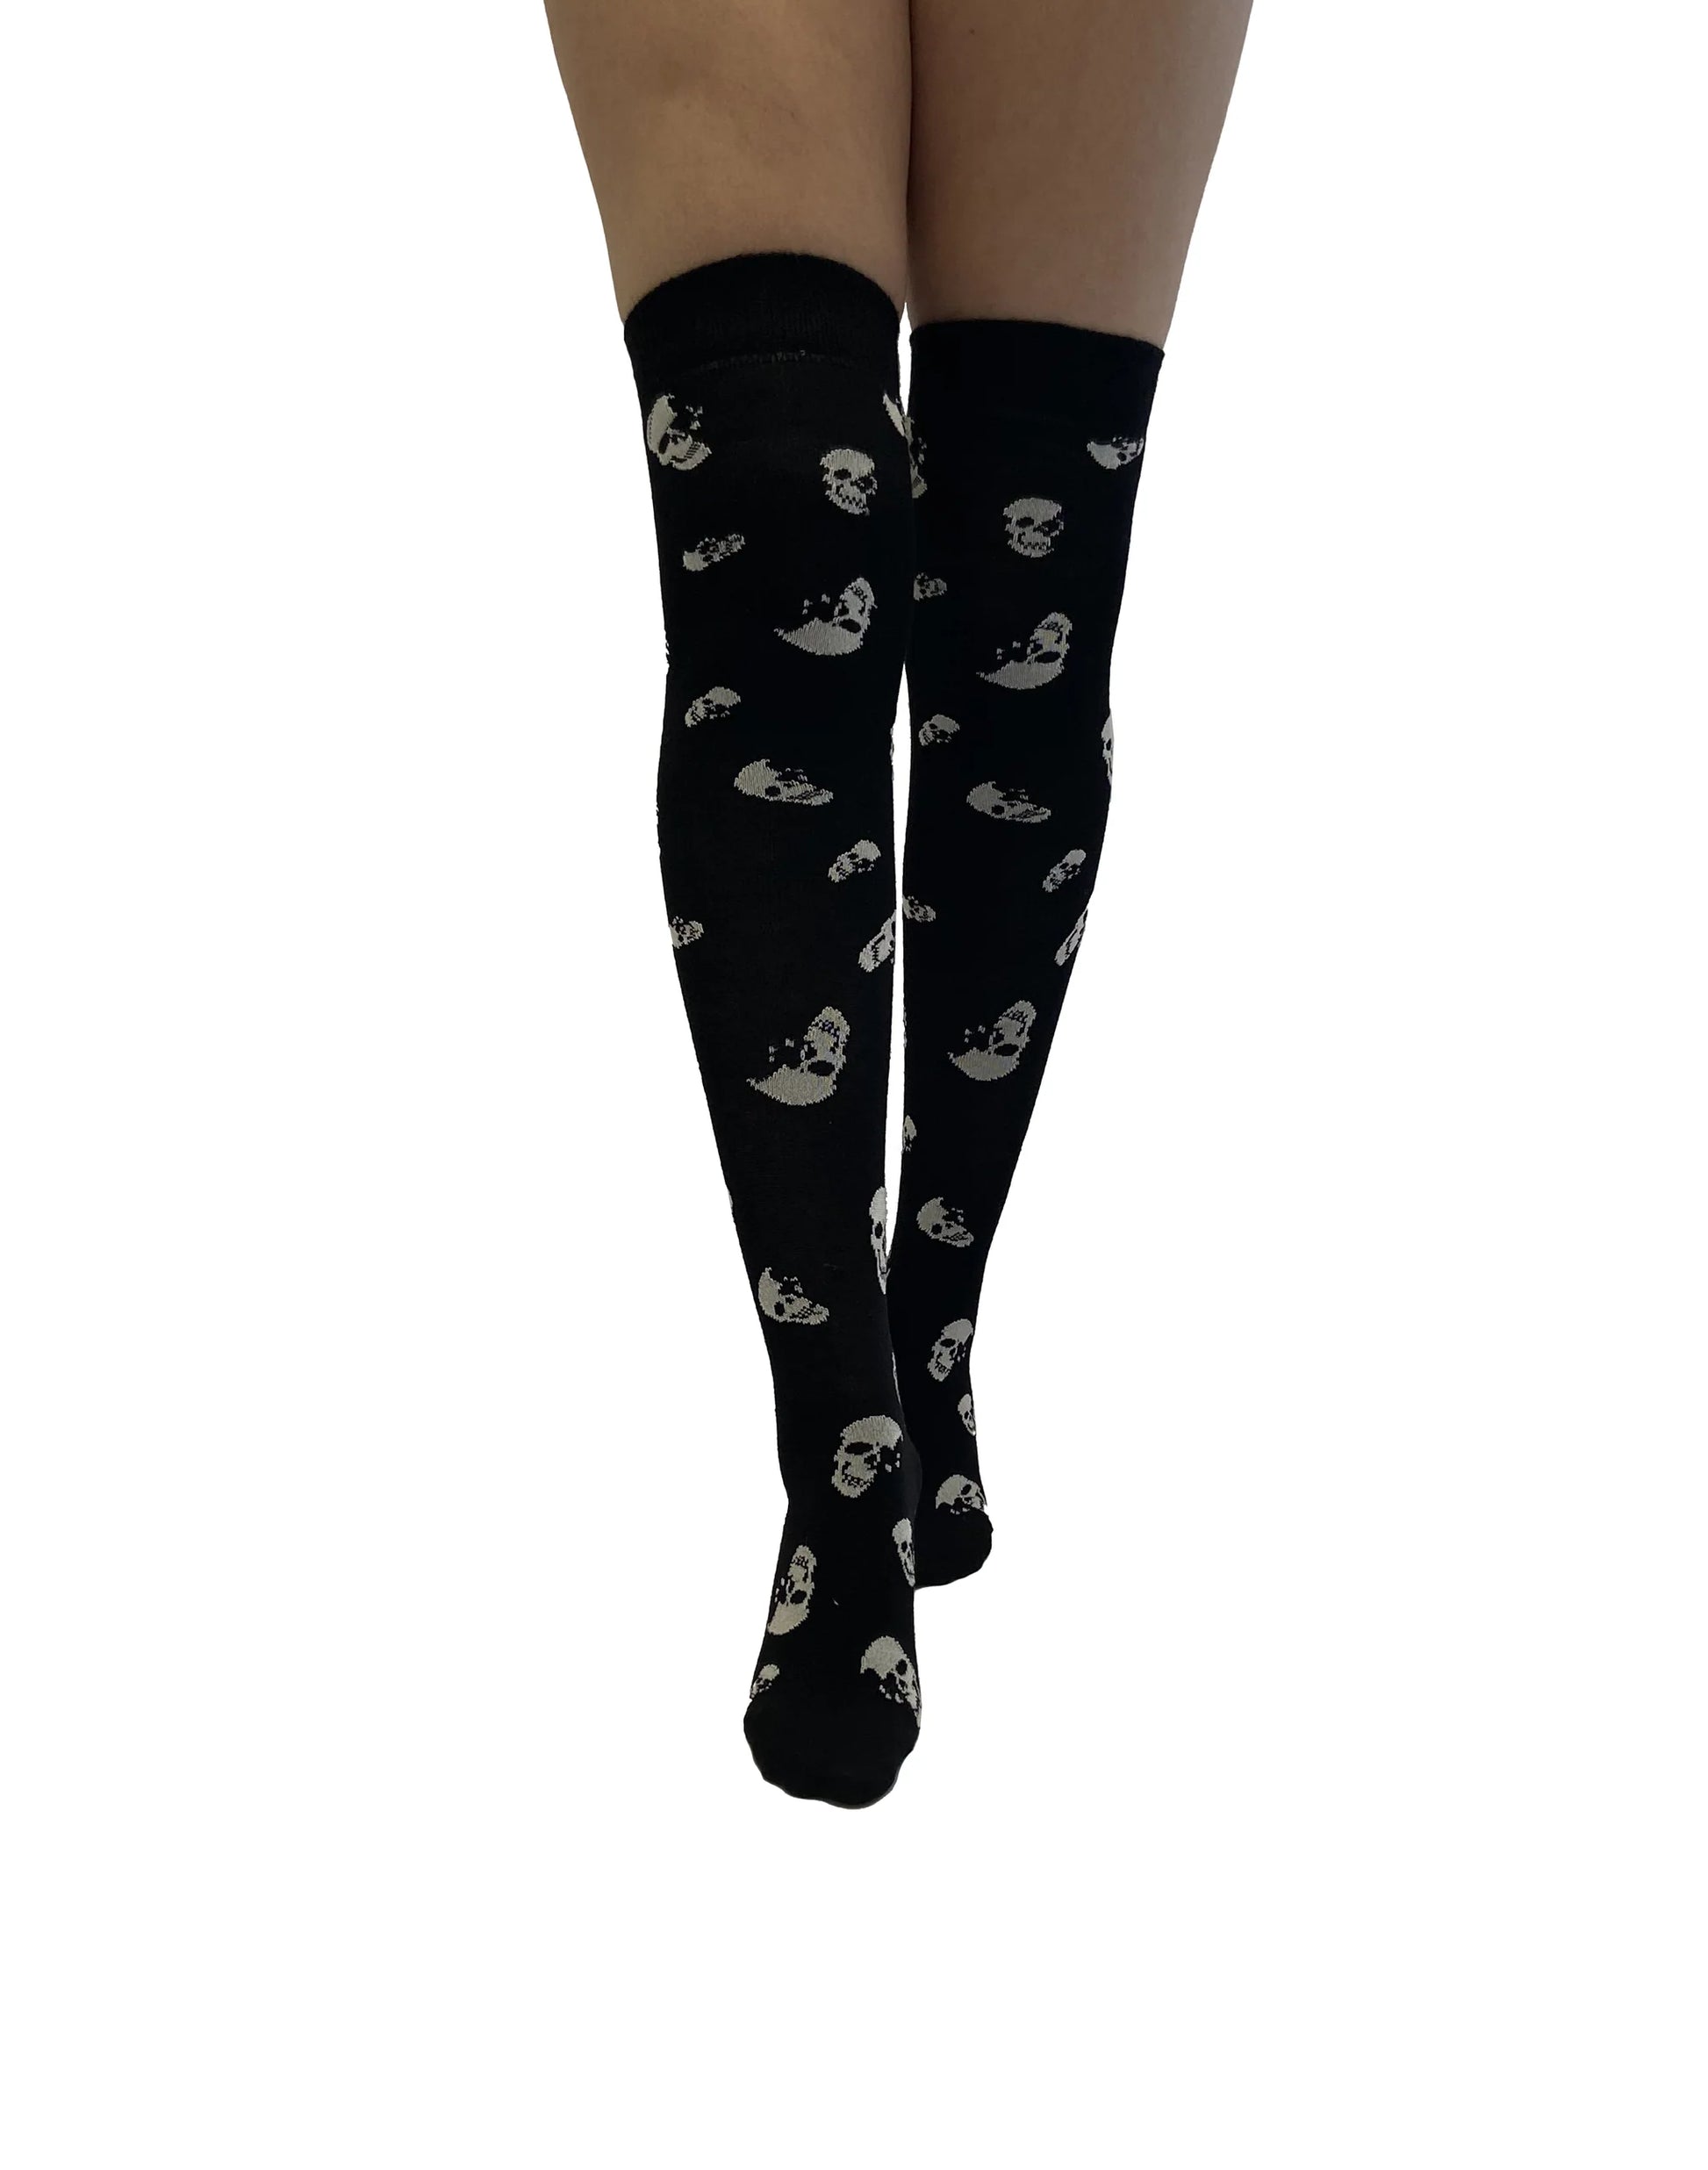 Pamela Mann Skulls Over-Knee Socks - Black cotton mix otk long socks with a white all over skull pattern.